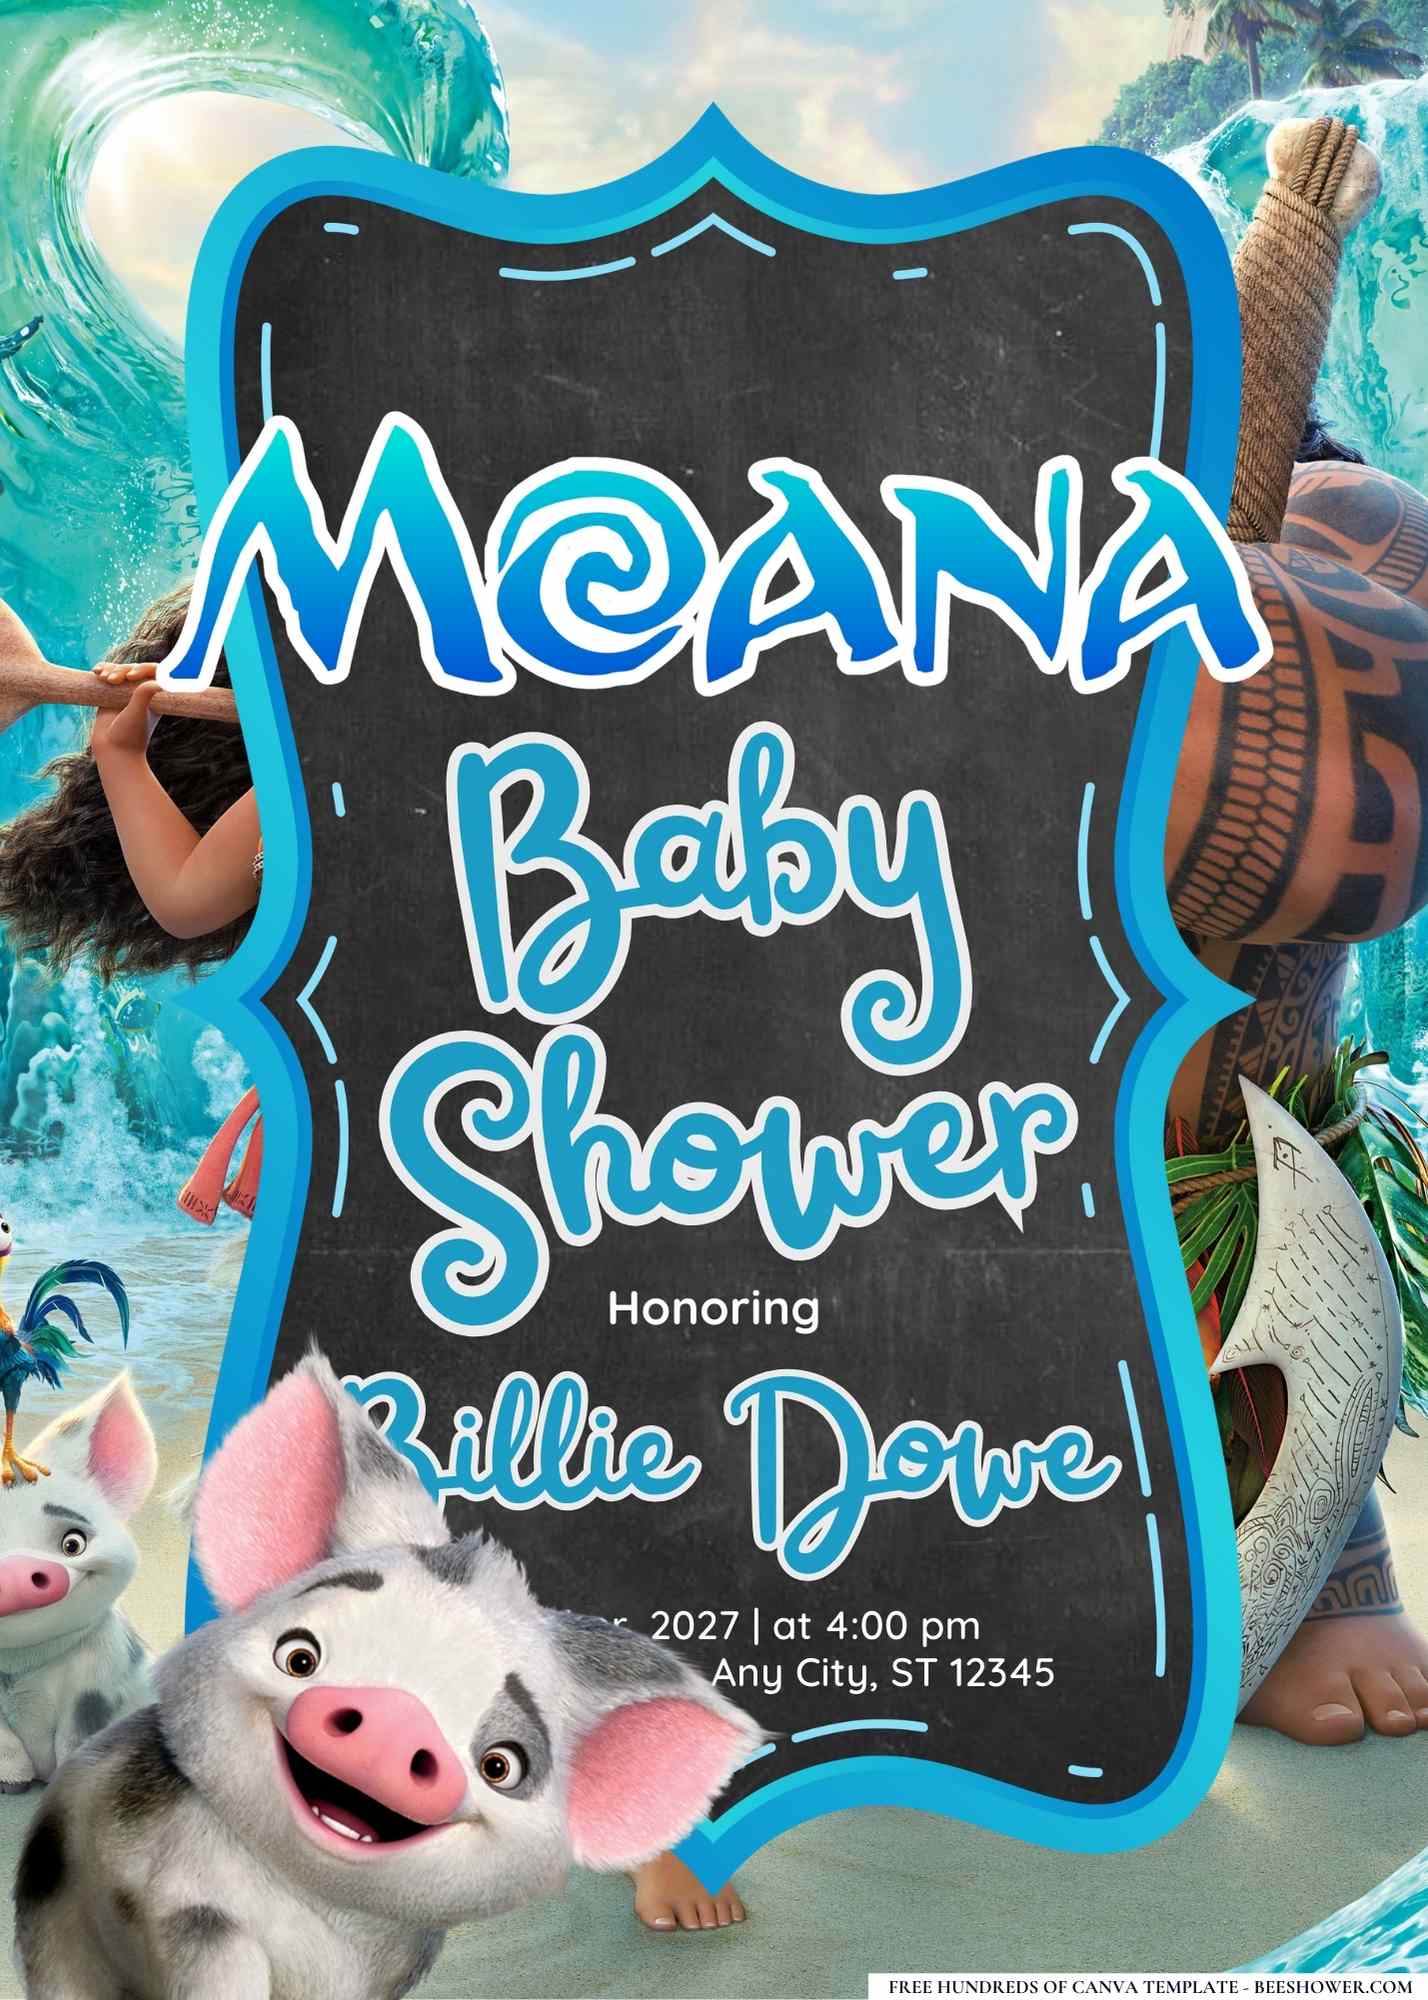 Moana Baby Shower Invitation